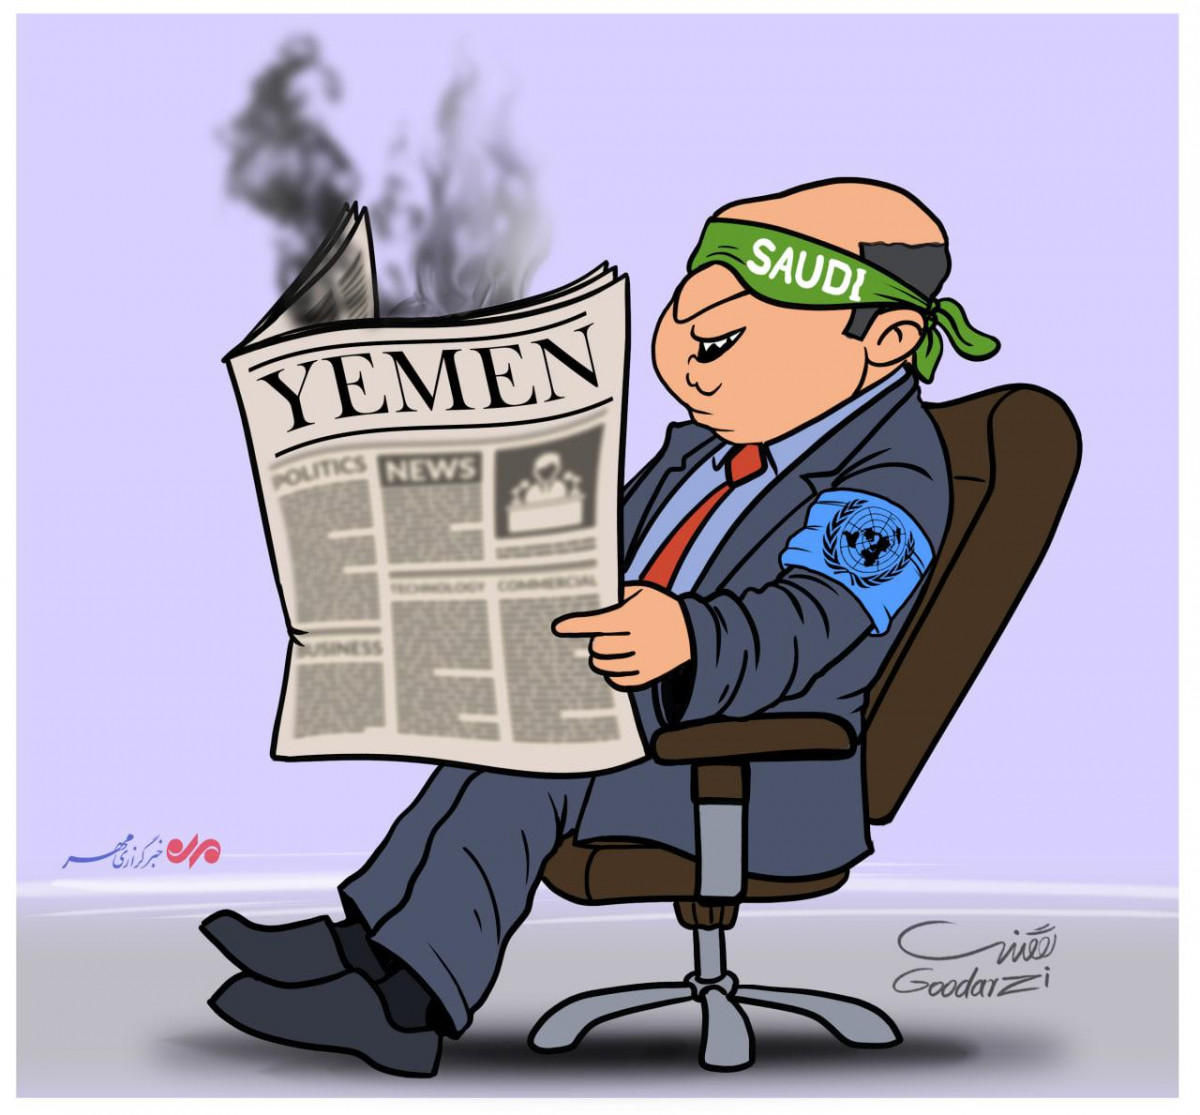 فجایع یمن در سازمان ملل دیده نمیشود